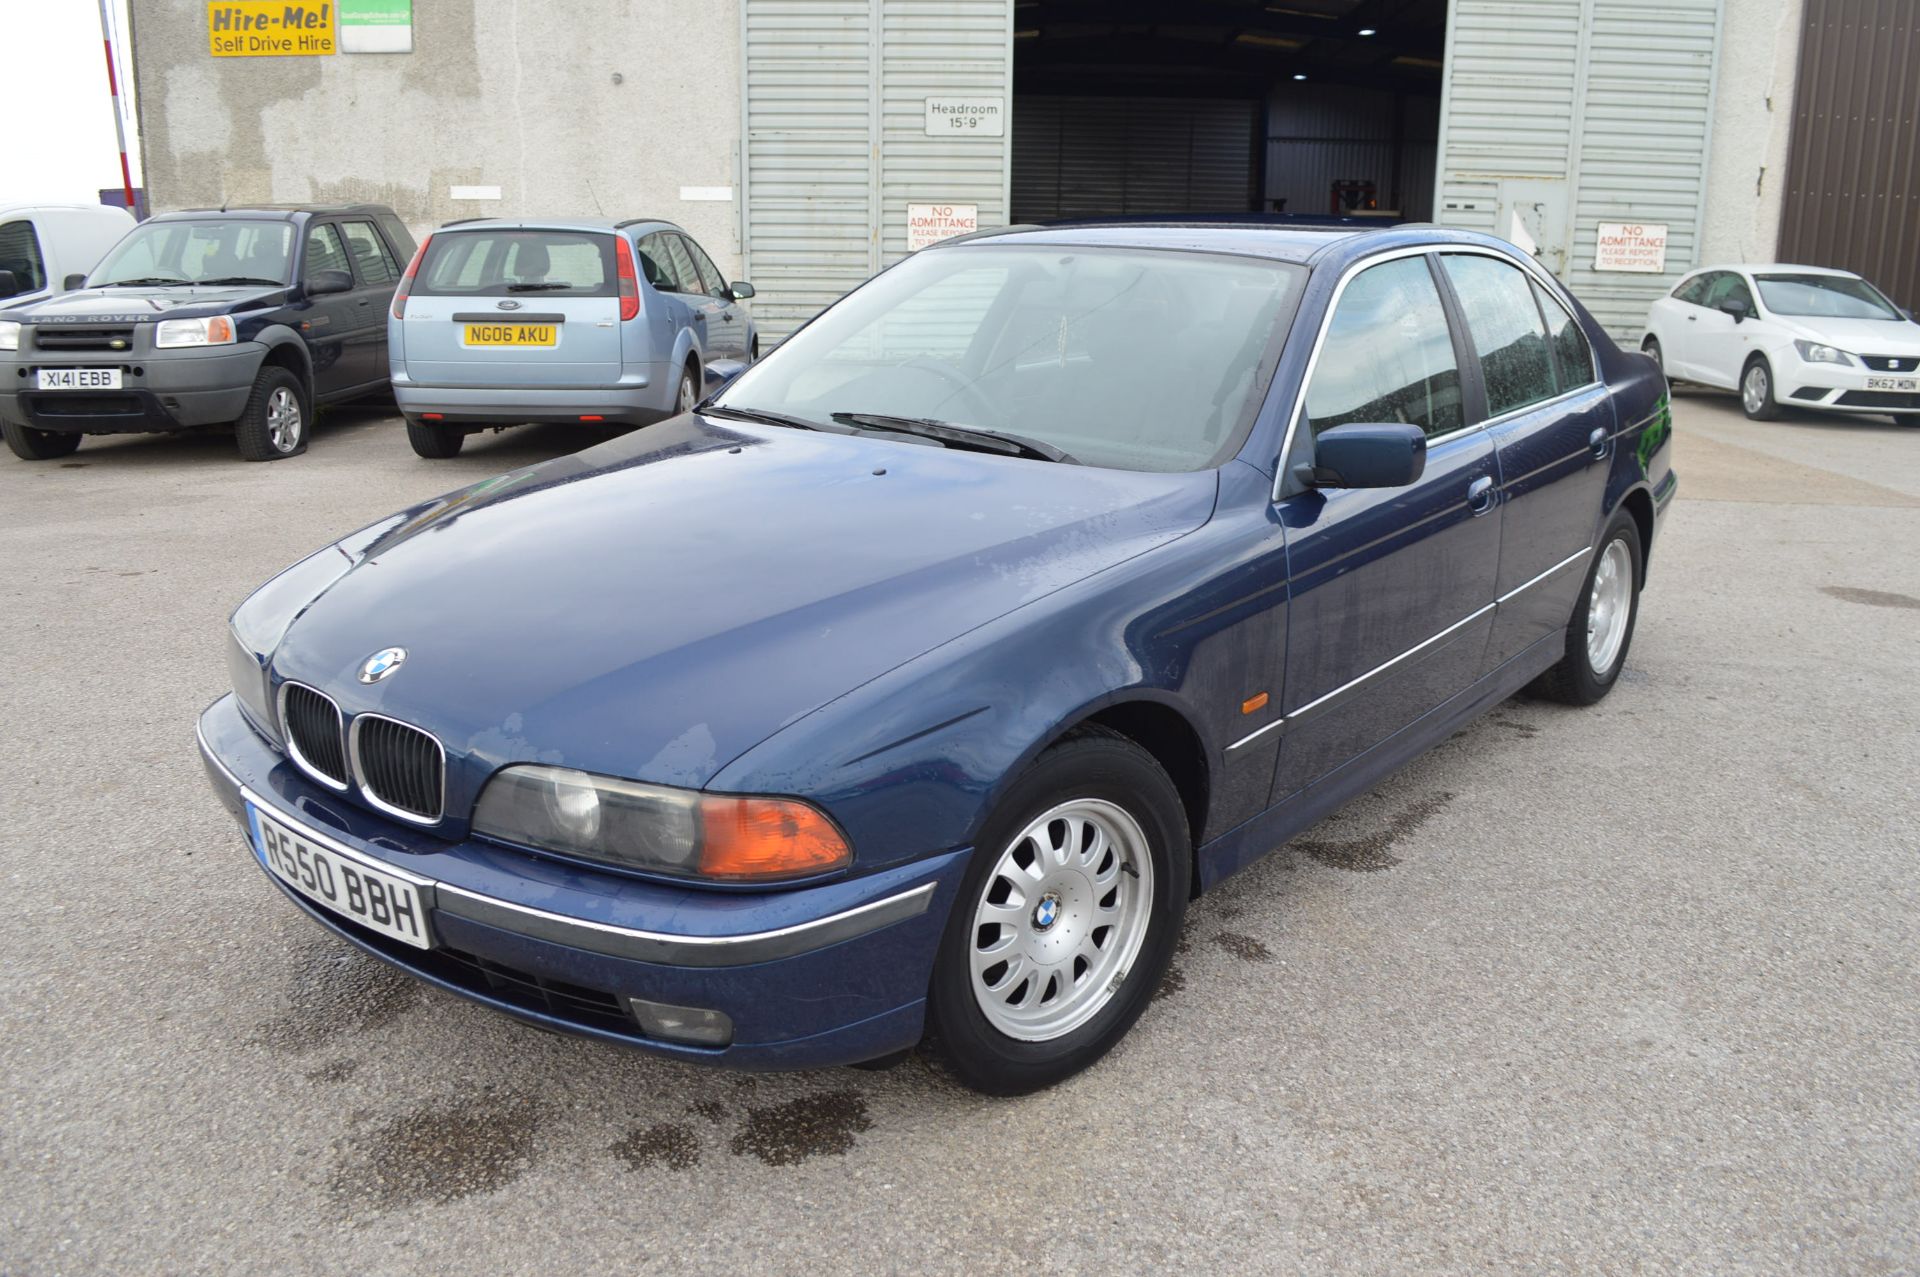 1998/R REG BLUE BMW 520I SE AUTOMATIC, AIR CON, 165K MILES *NO VAT* - Image 3 of 34